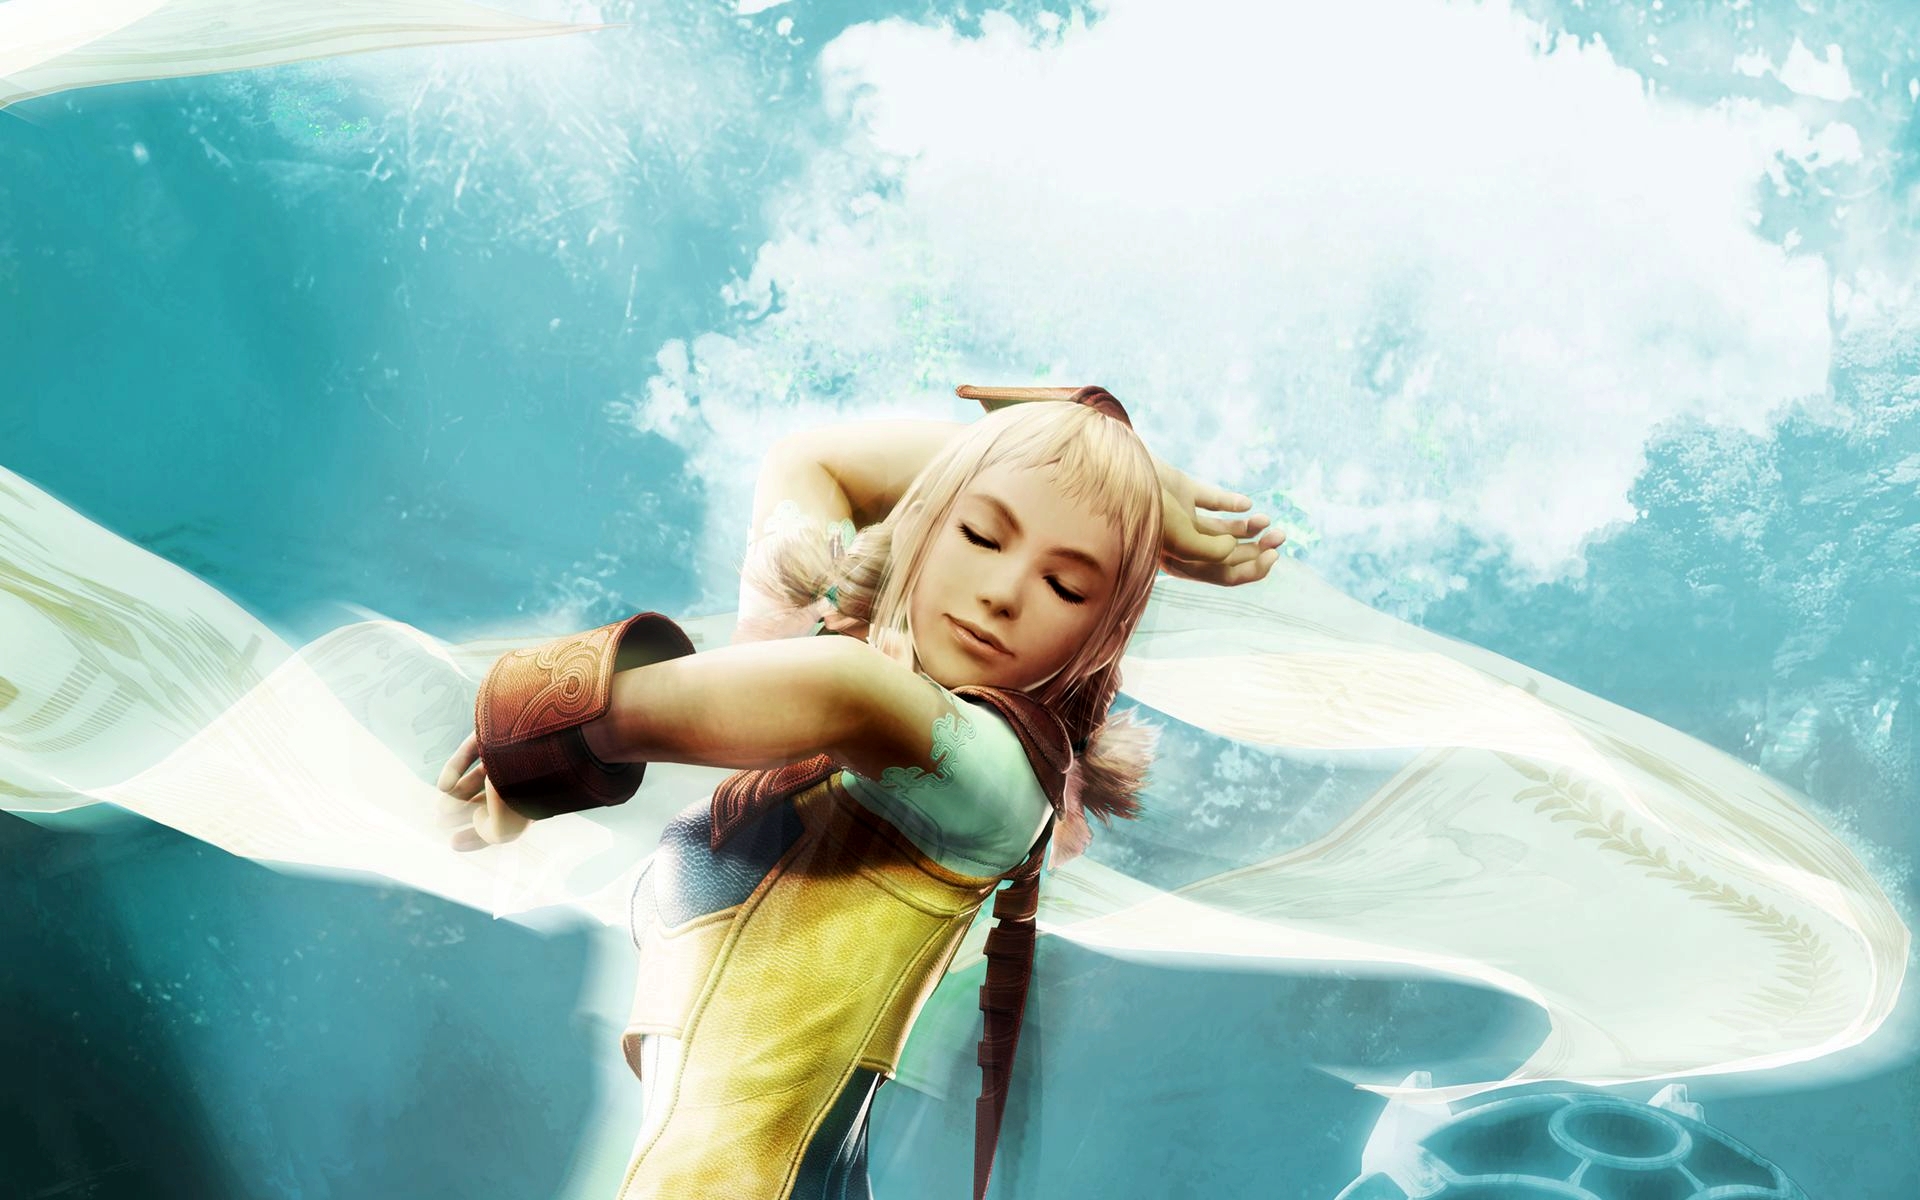 Final Fantasy XII, Penelo - desktop wallpaper